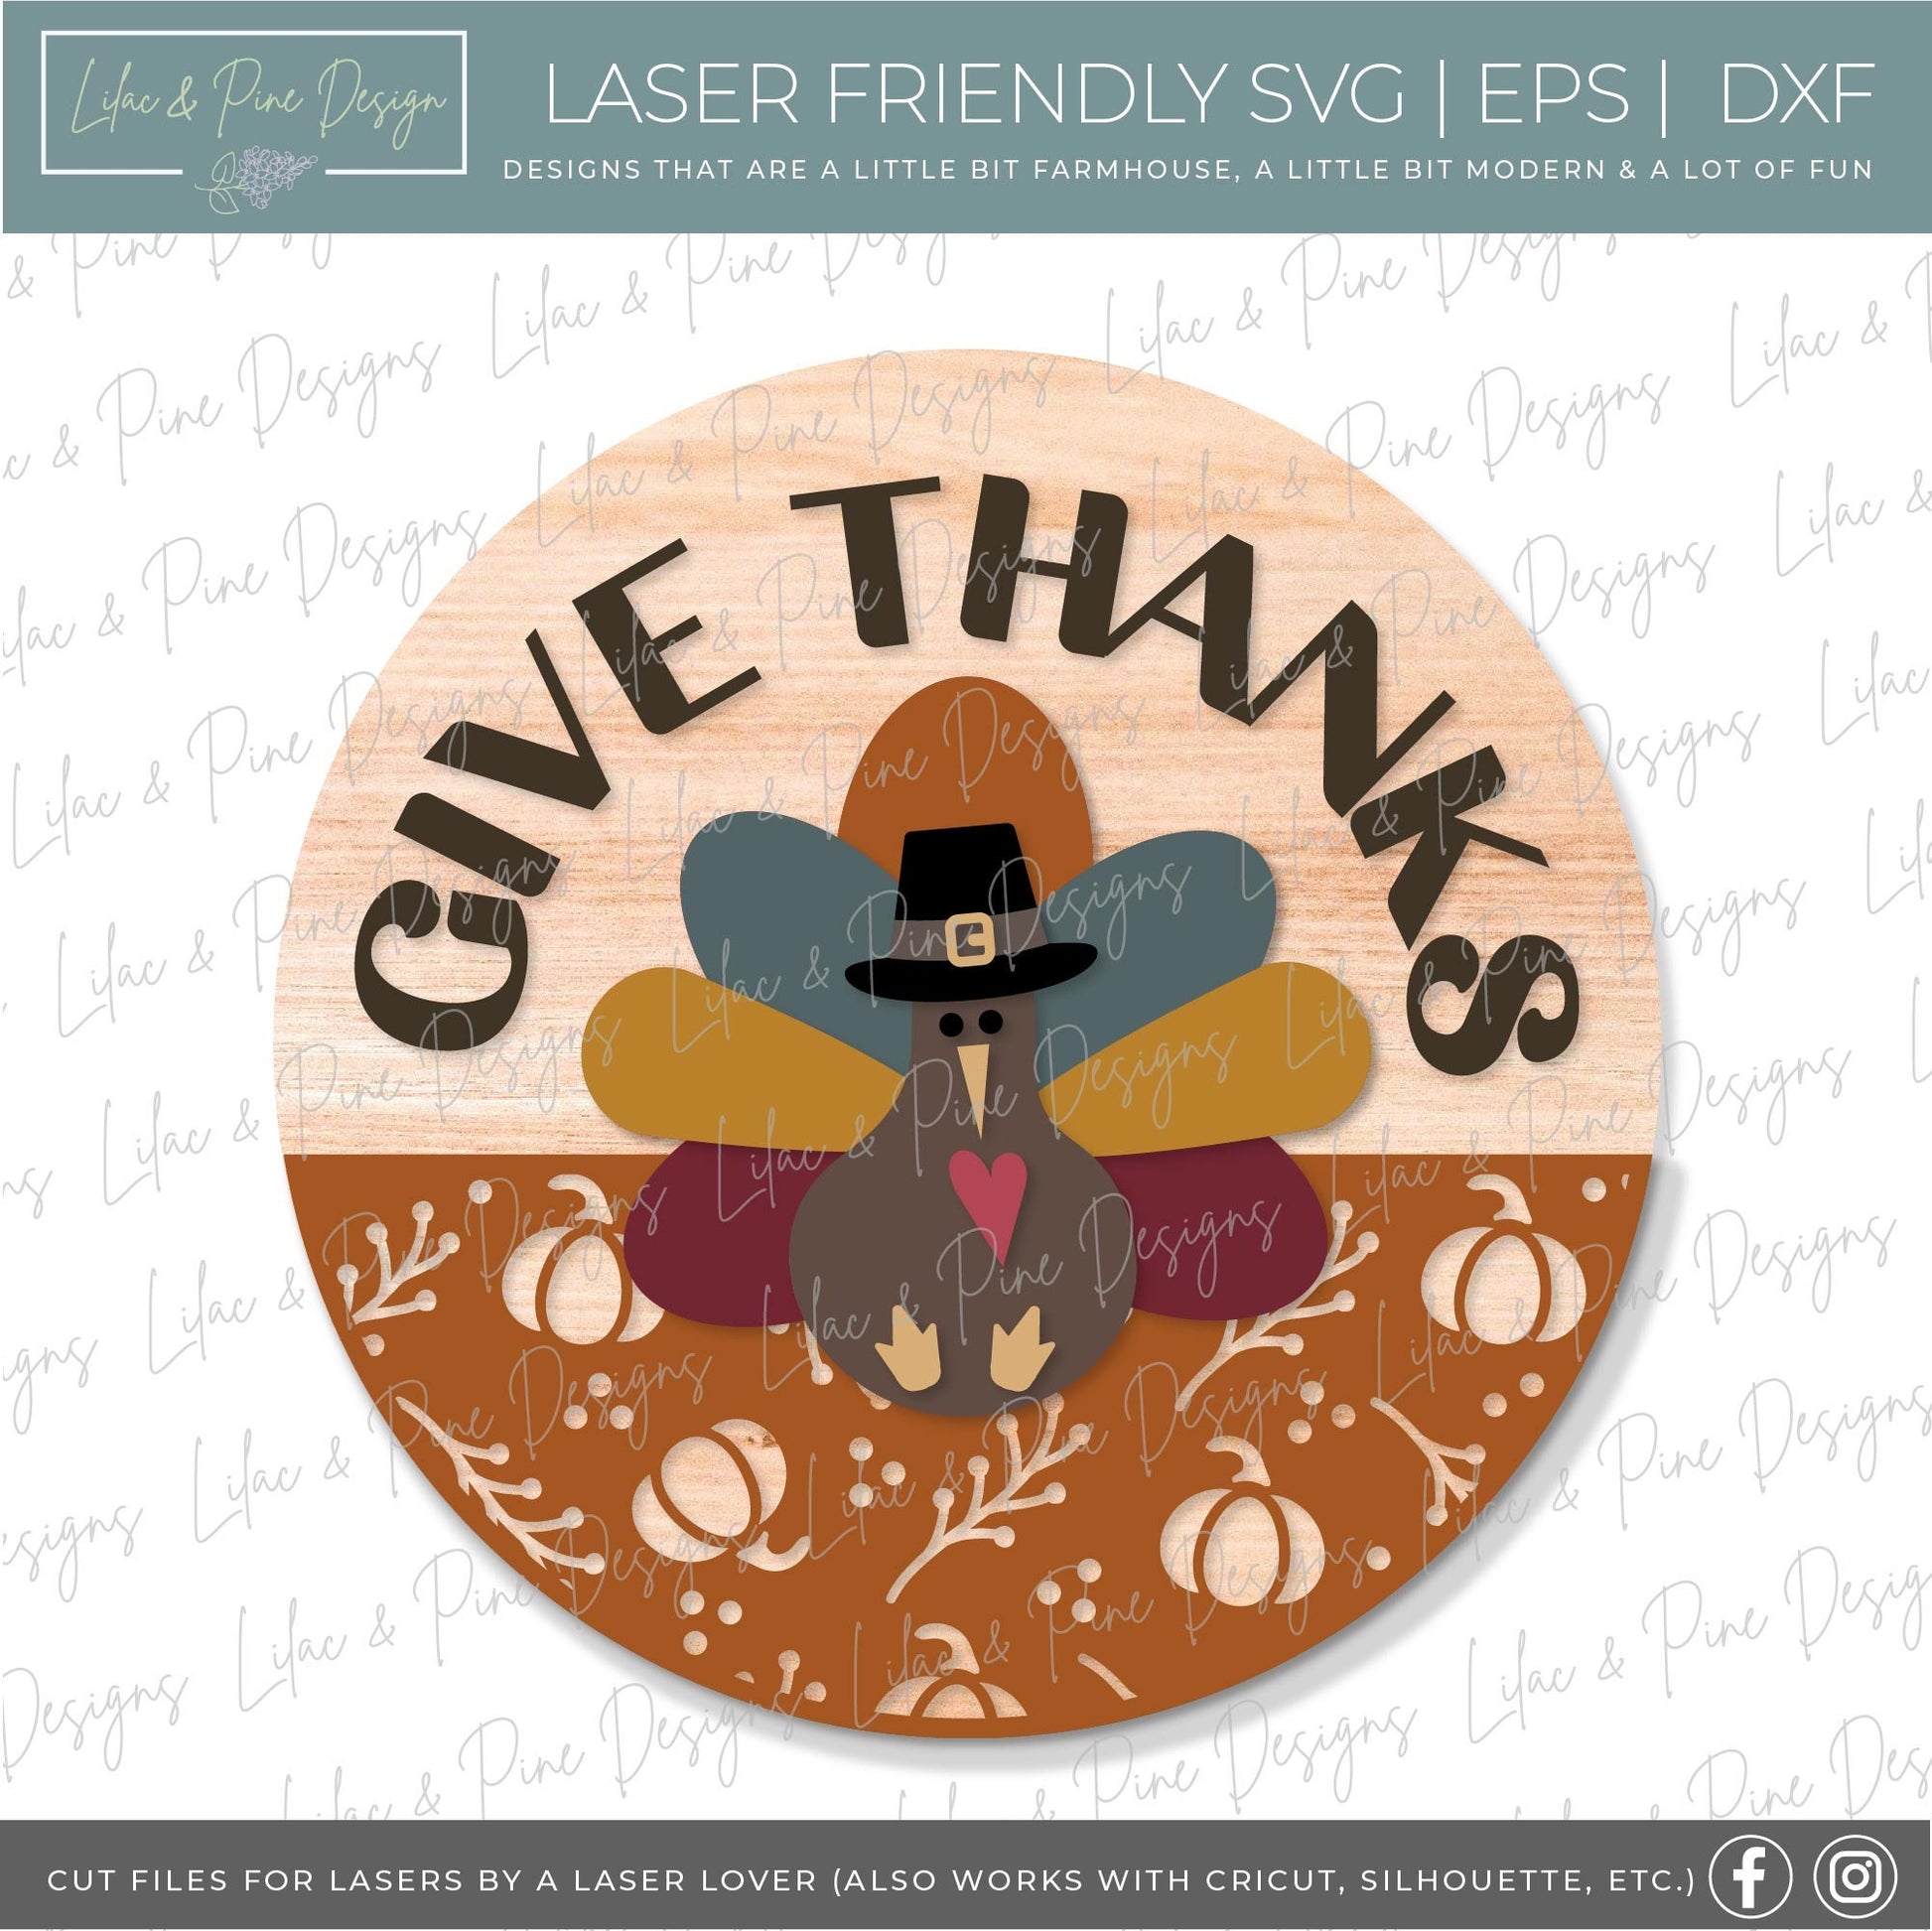 Thanksgiving door hanger SVG, Give Thanks sign SVG, Turkey welcome sign svg, Thanksgiving porch decor, Glowforge SVG, laser cut file